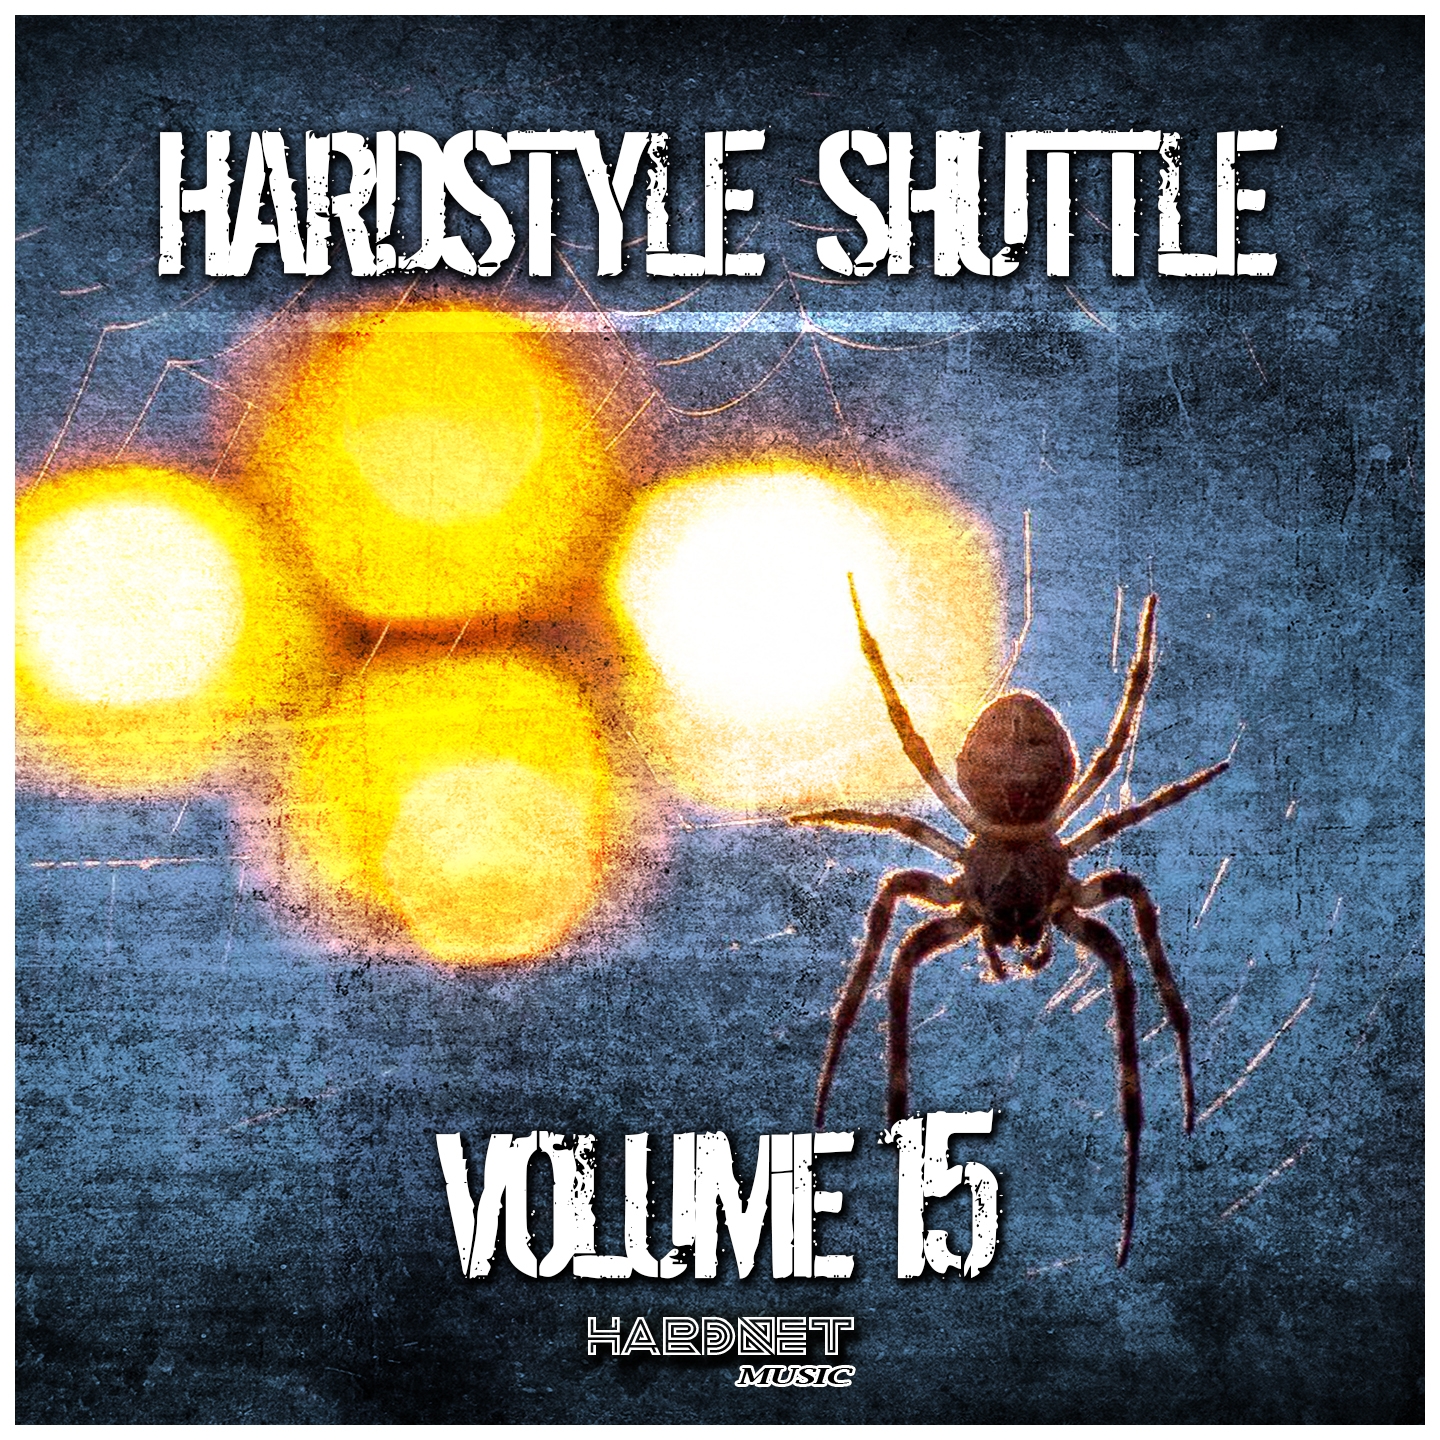 Hardstyle Shuttle, Vol. 15